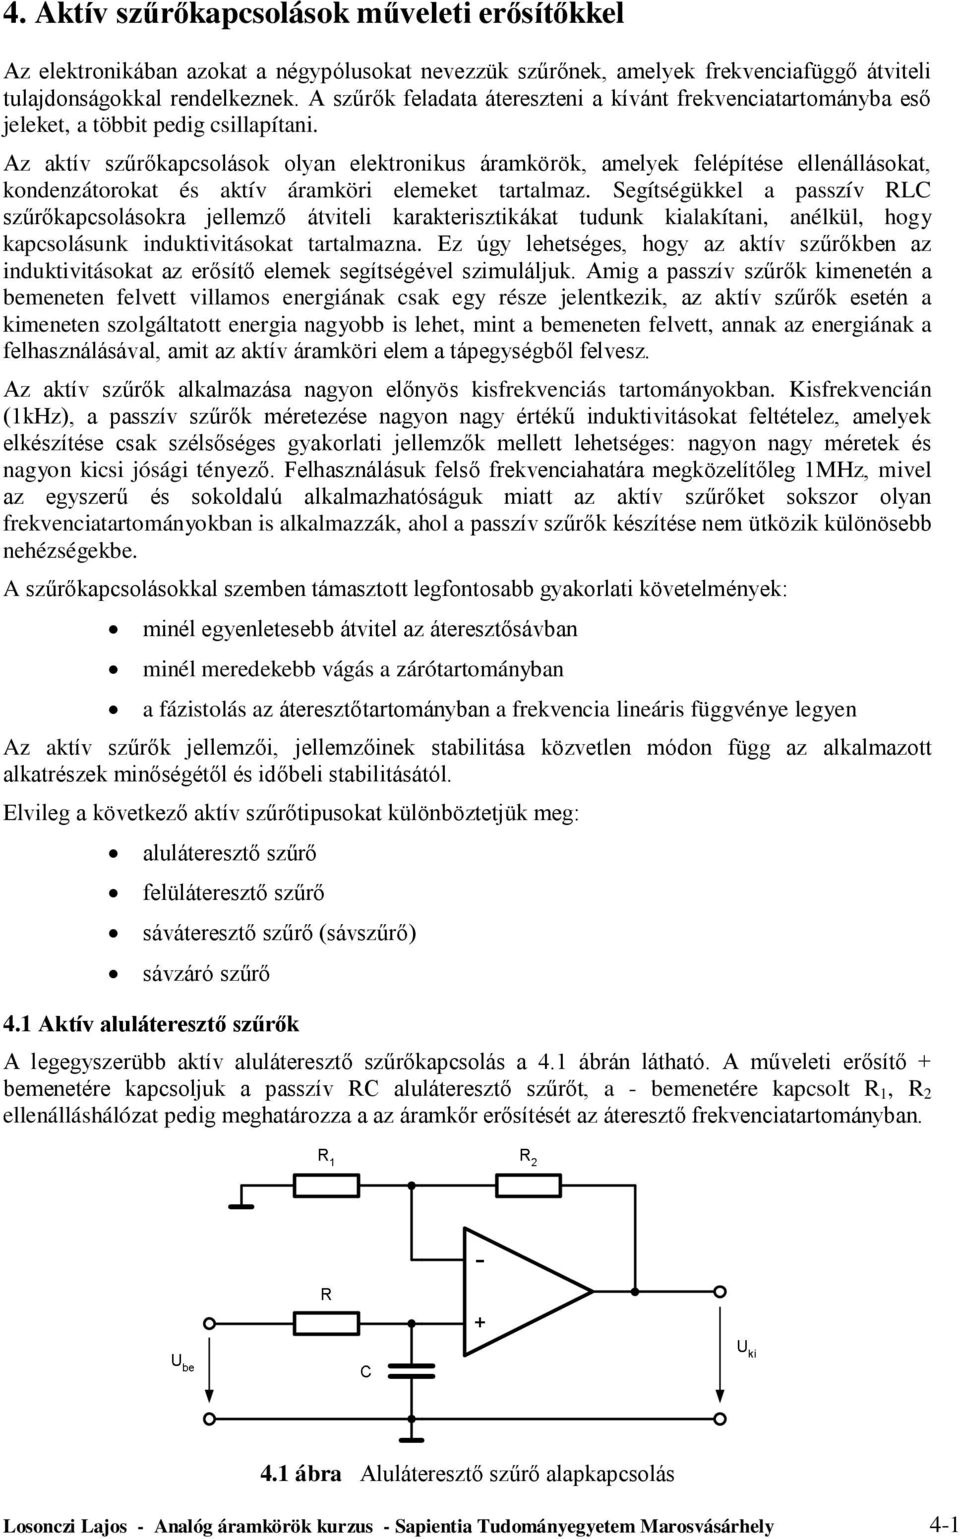 4. Aktív szűrőkapcsolások műveleti erősítőkkel - PDF Ingyenes letöltés